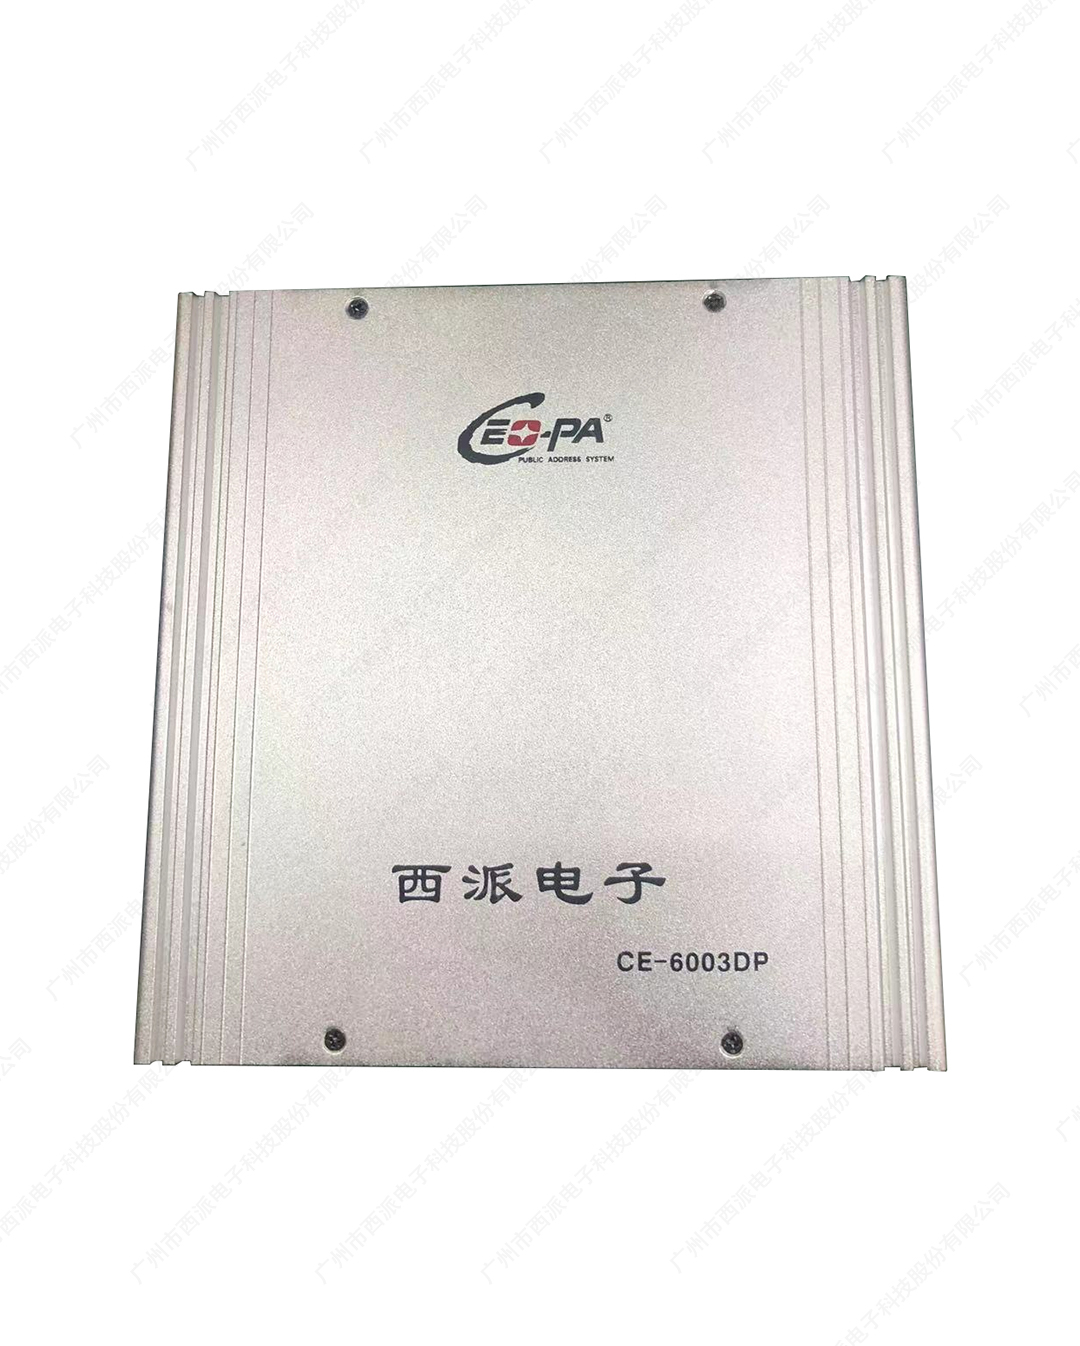 壁挂式网络广播终端 CE-6003DP